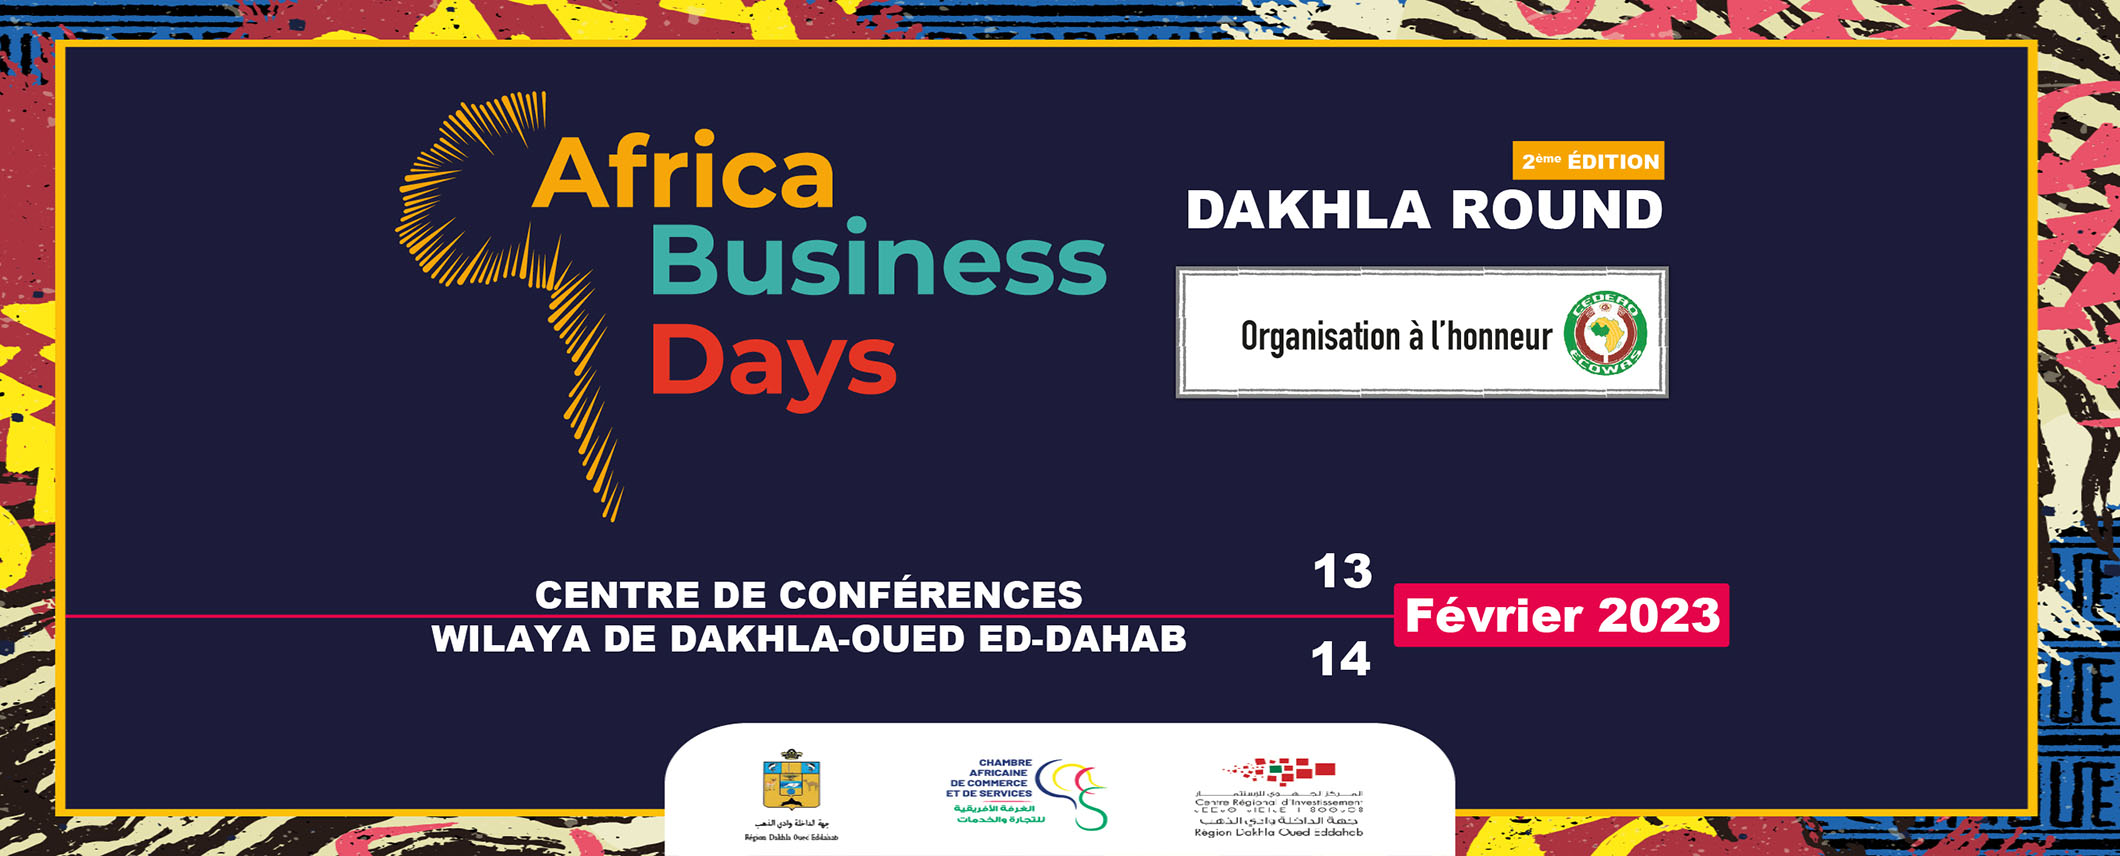 Africa Business Days – Dakhla Round